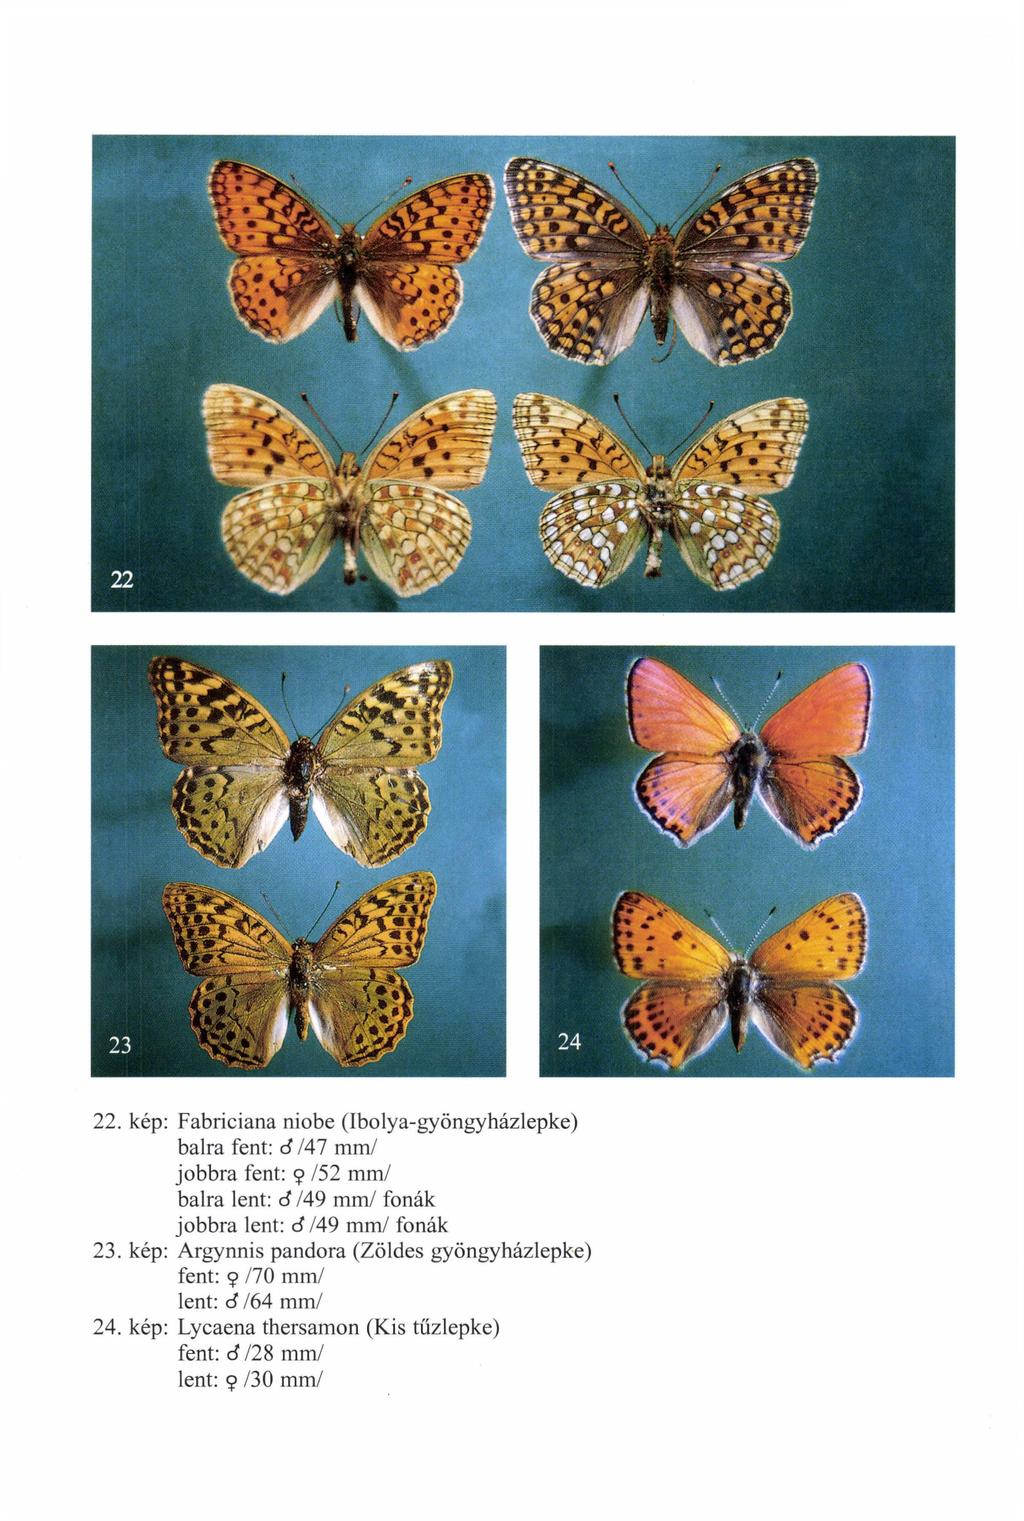 22. kép: Fabriciana niobe (Ibolya-gyöngyházlepke) balra fent: cf 141 mm/ jobbra fent: 9 /52 mm/ balra lent: cf /49 mm/ fonák jobbra lent: cf /49 mm/ fonák